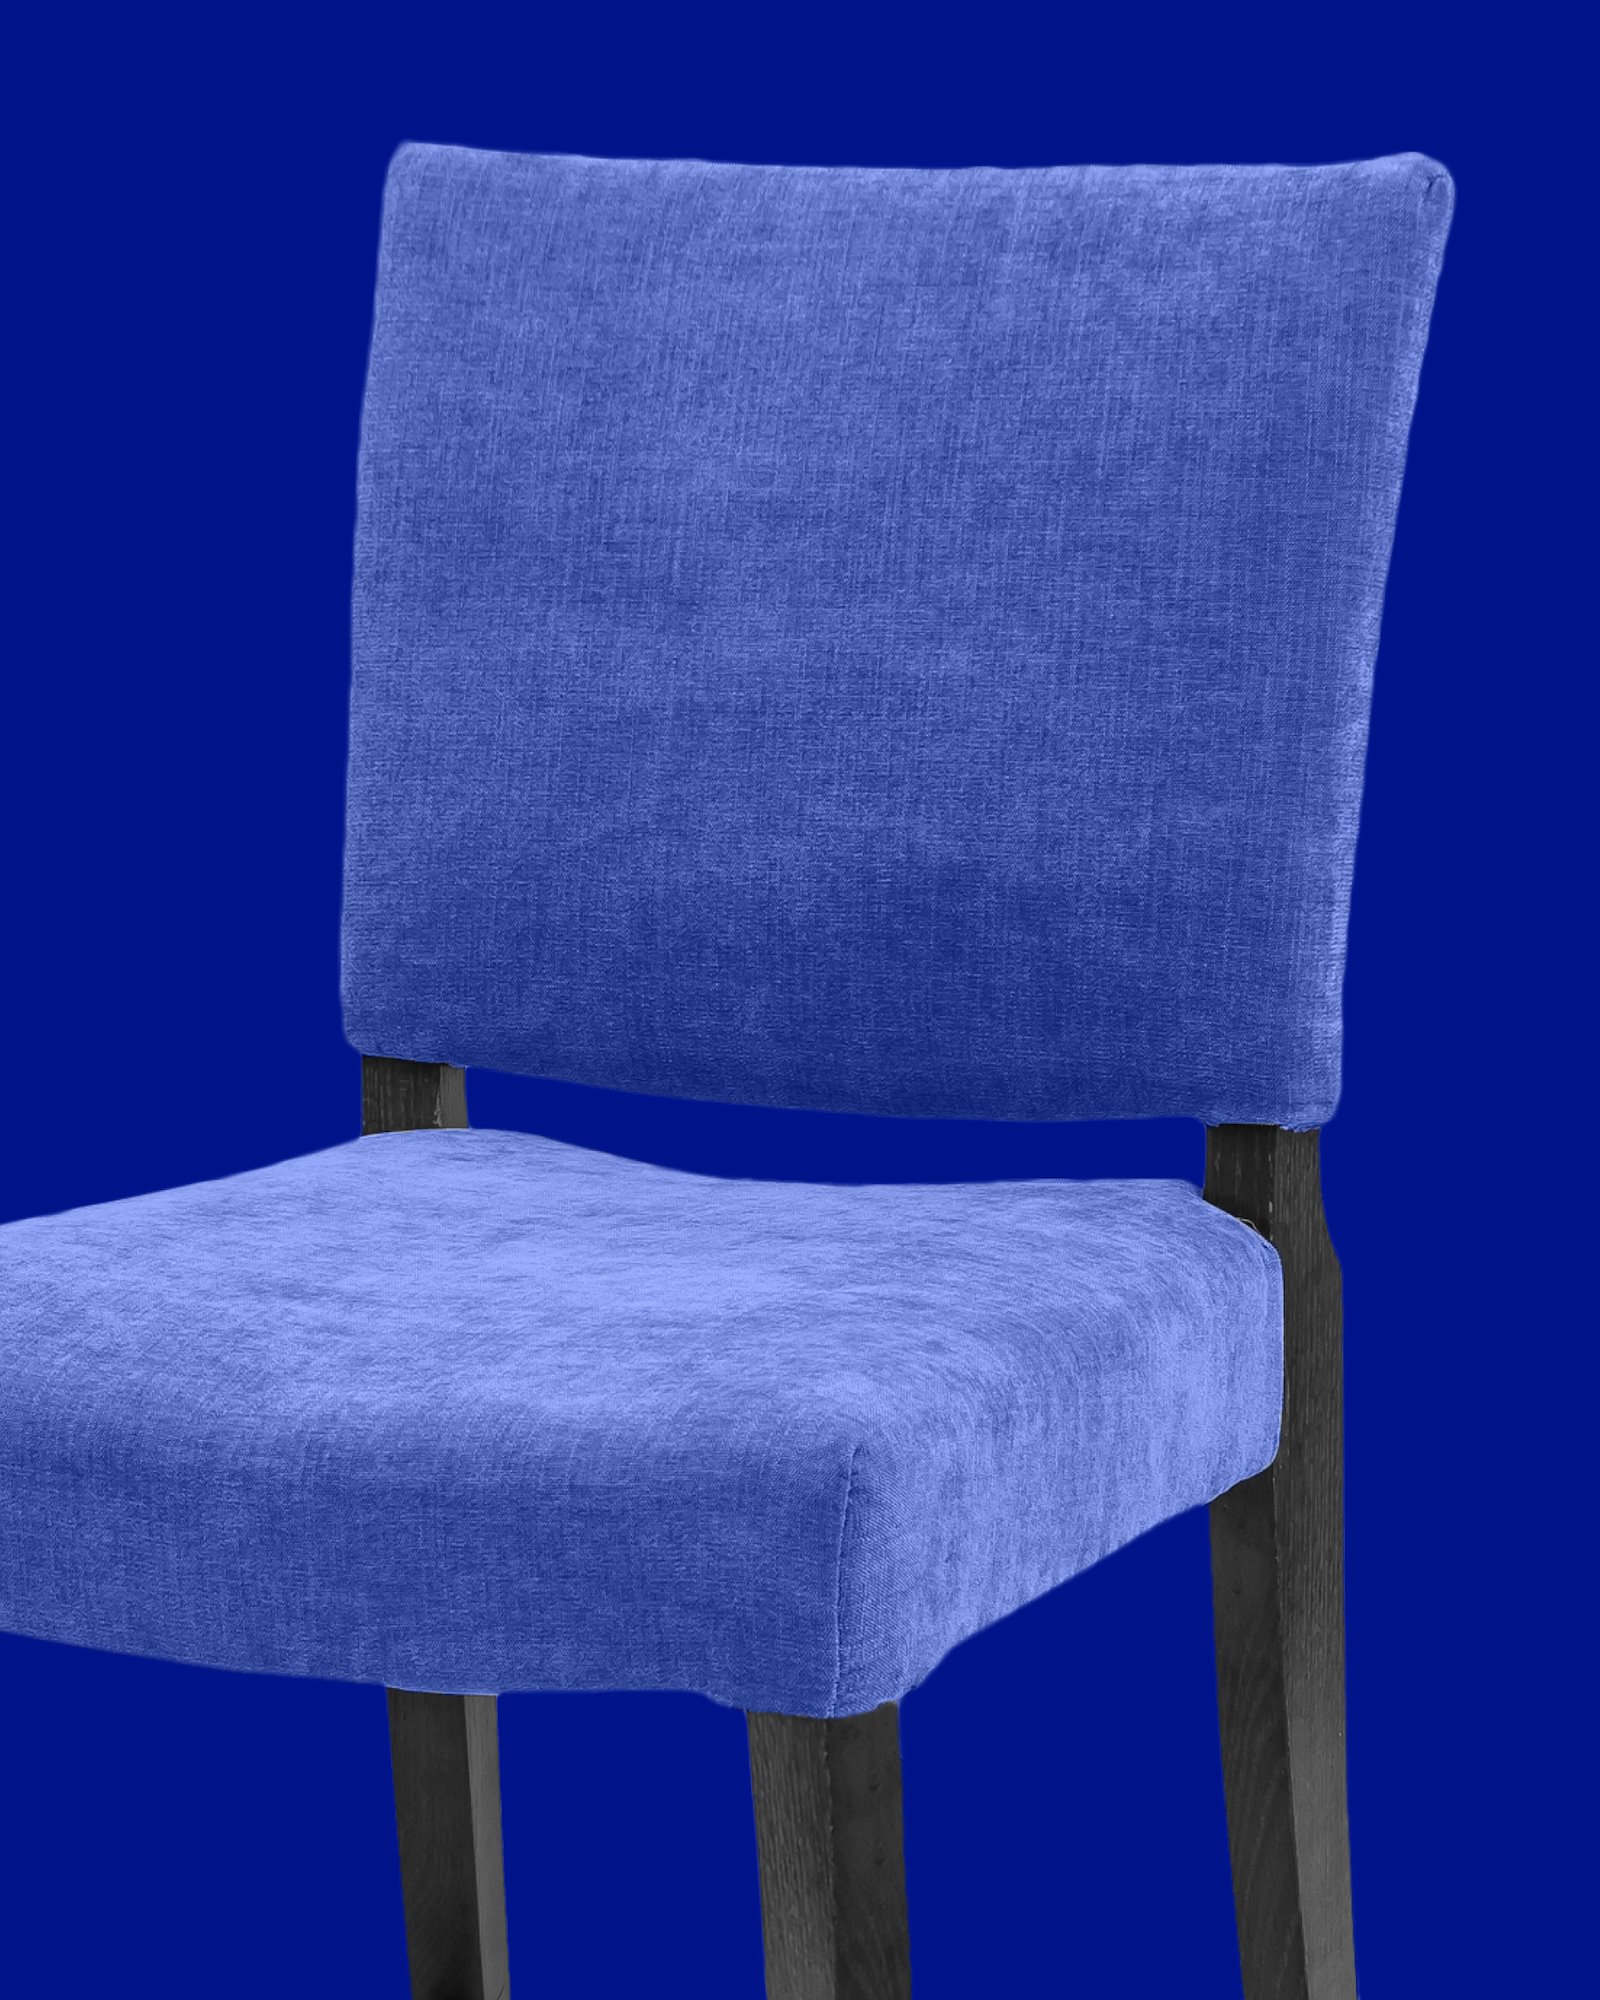 Möbel aufpolstern DIY8014_upholstery_image.jpg